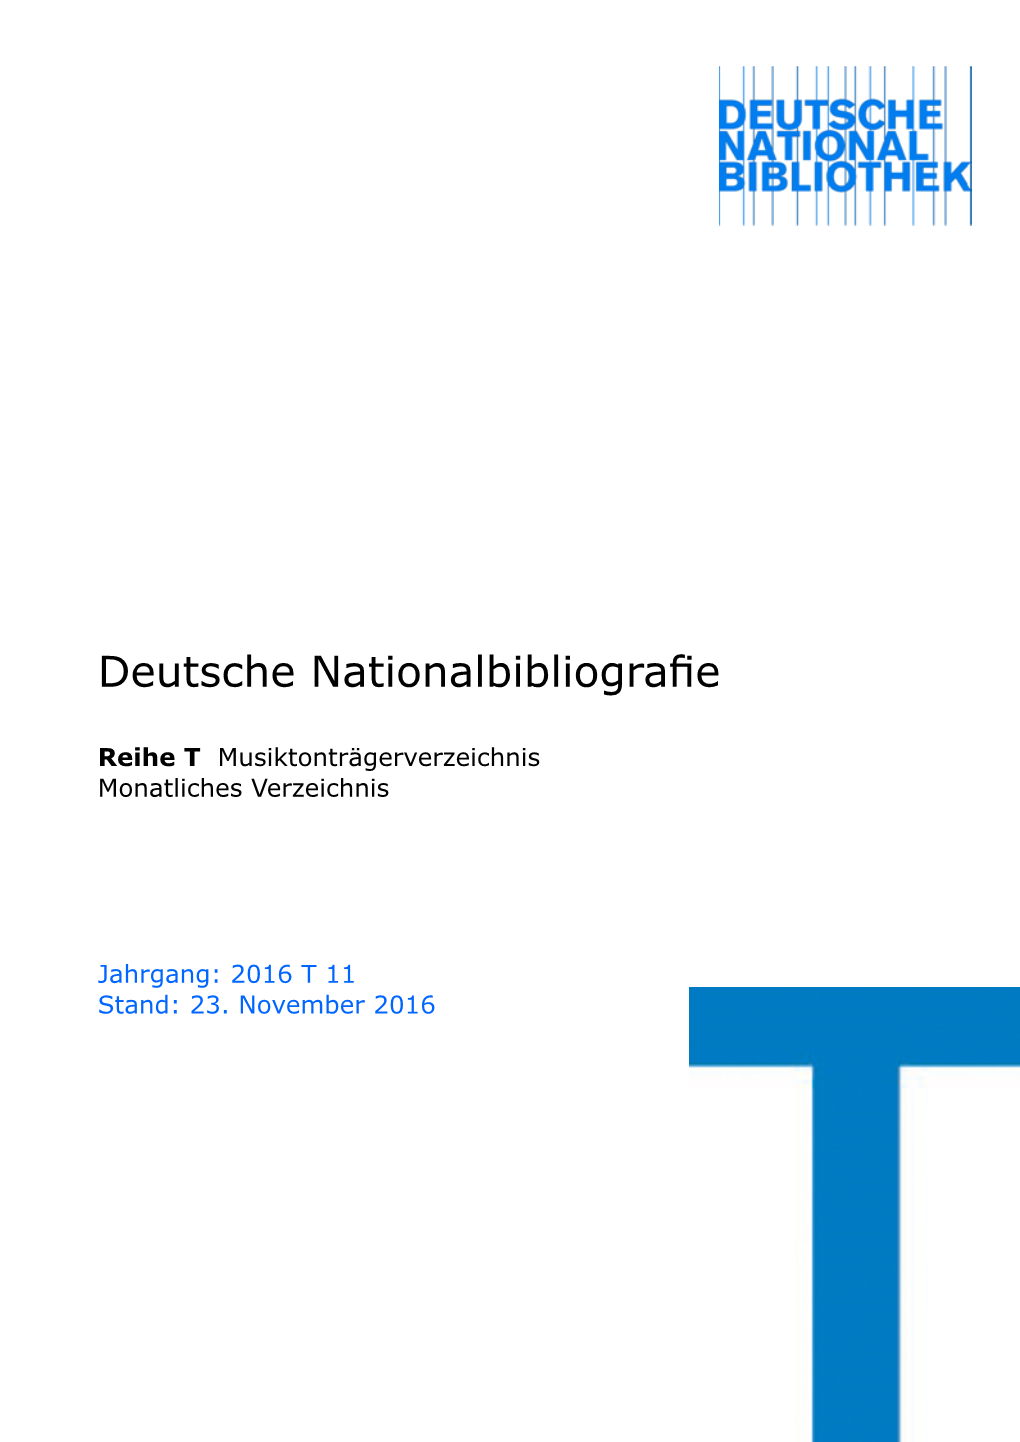 Deutsche Nationalbibliografie 2016 T 11